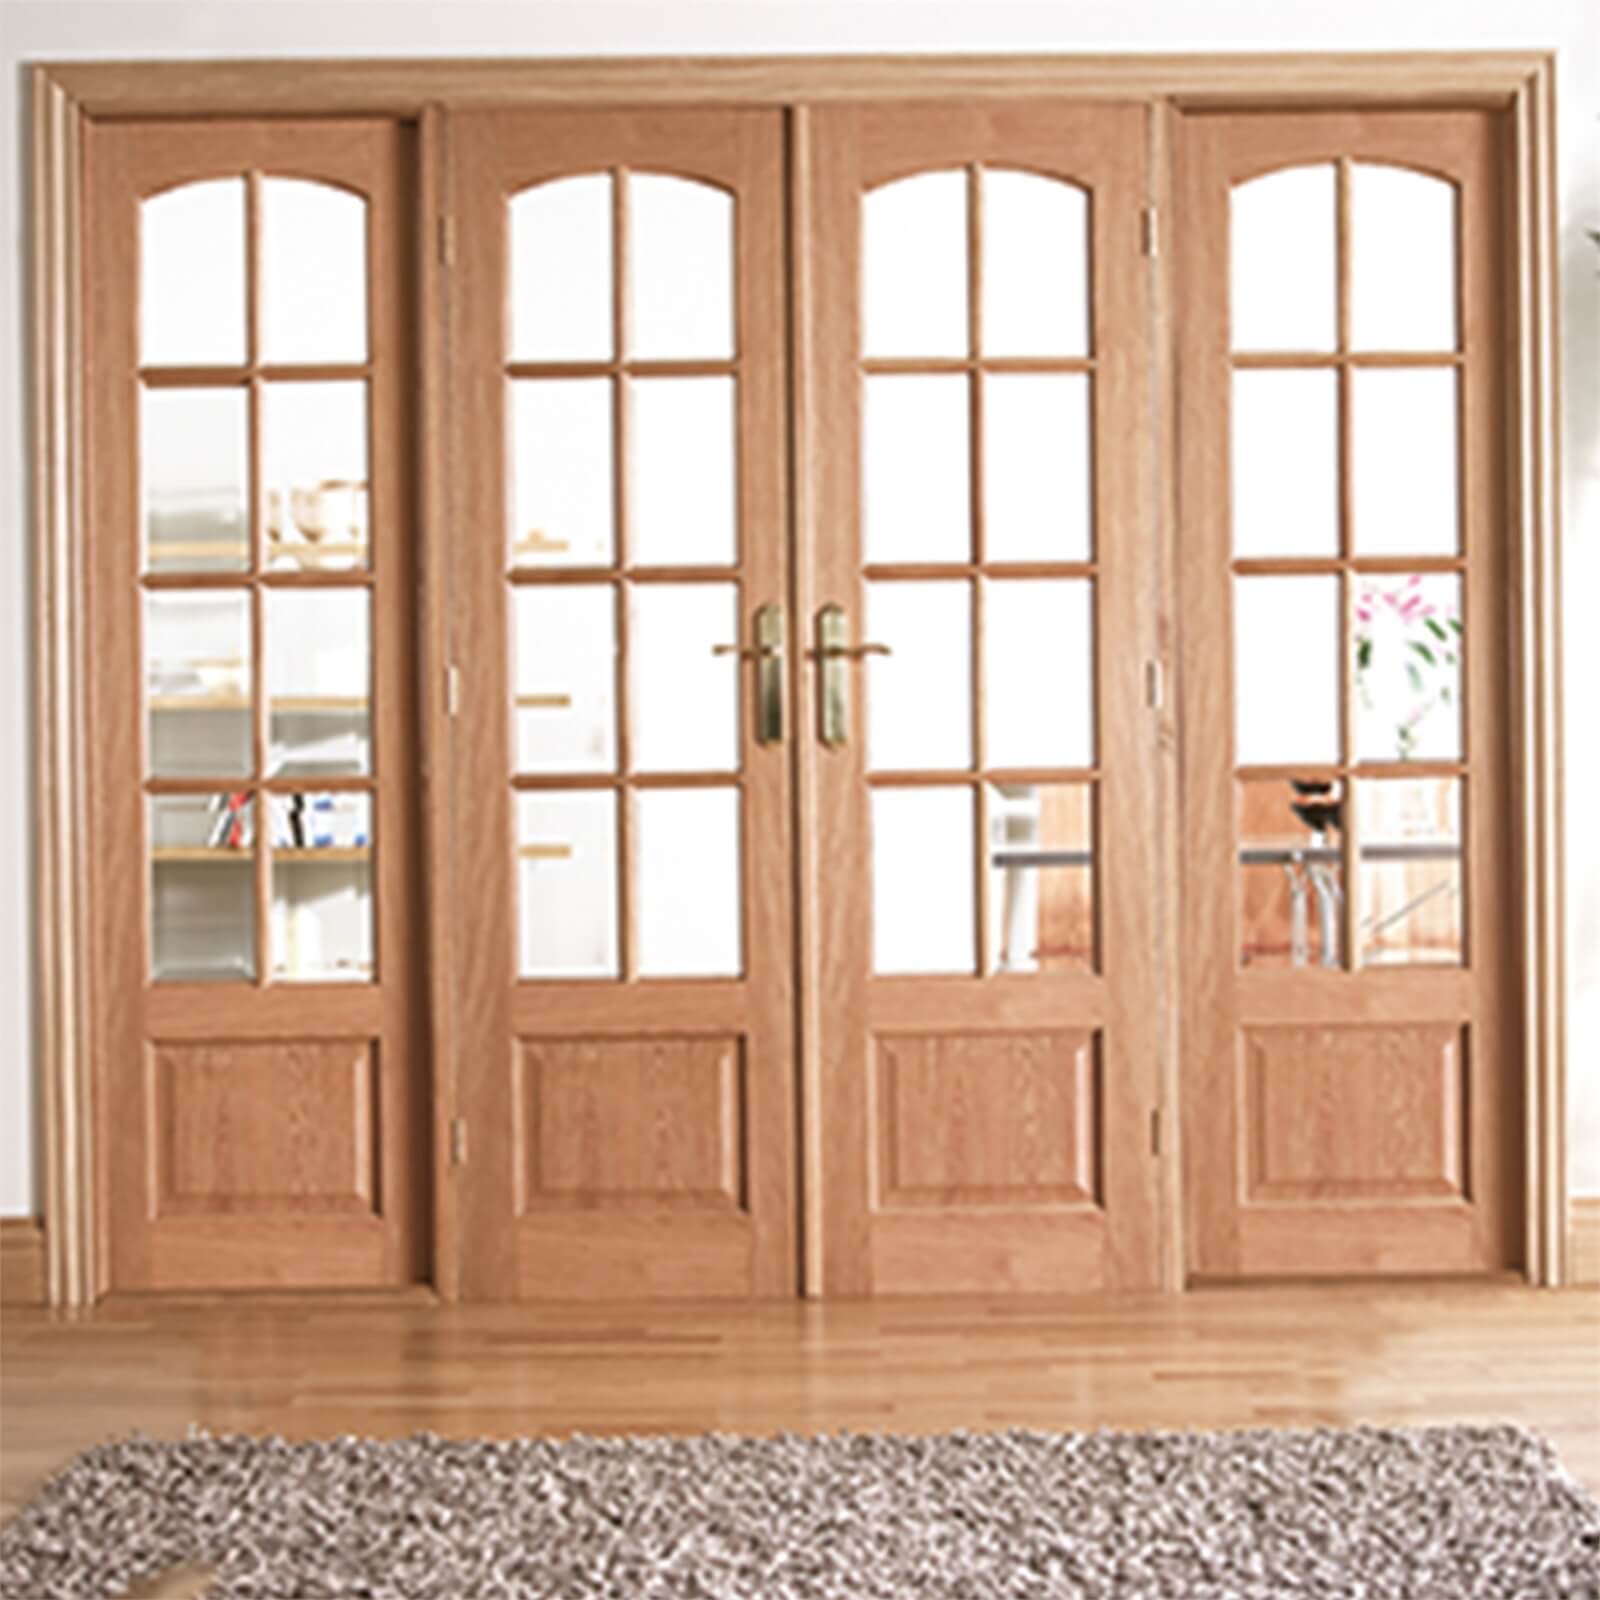 Worthing Internal Glazed Unfinished Oak Room Divider - 2478 x 2031mm